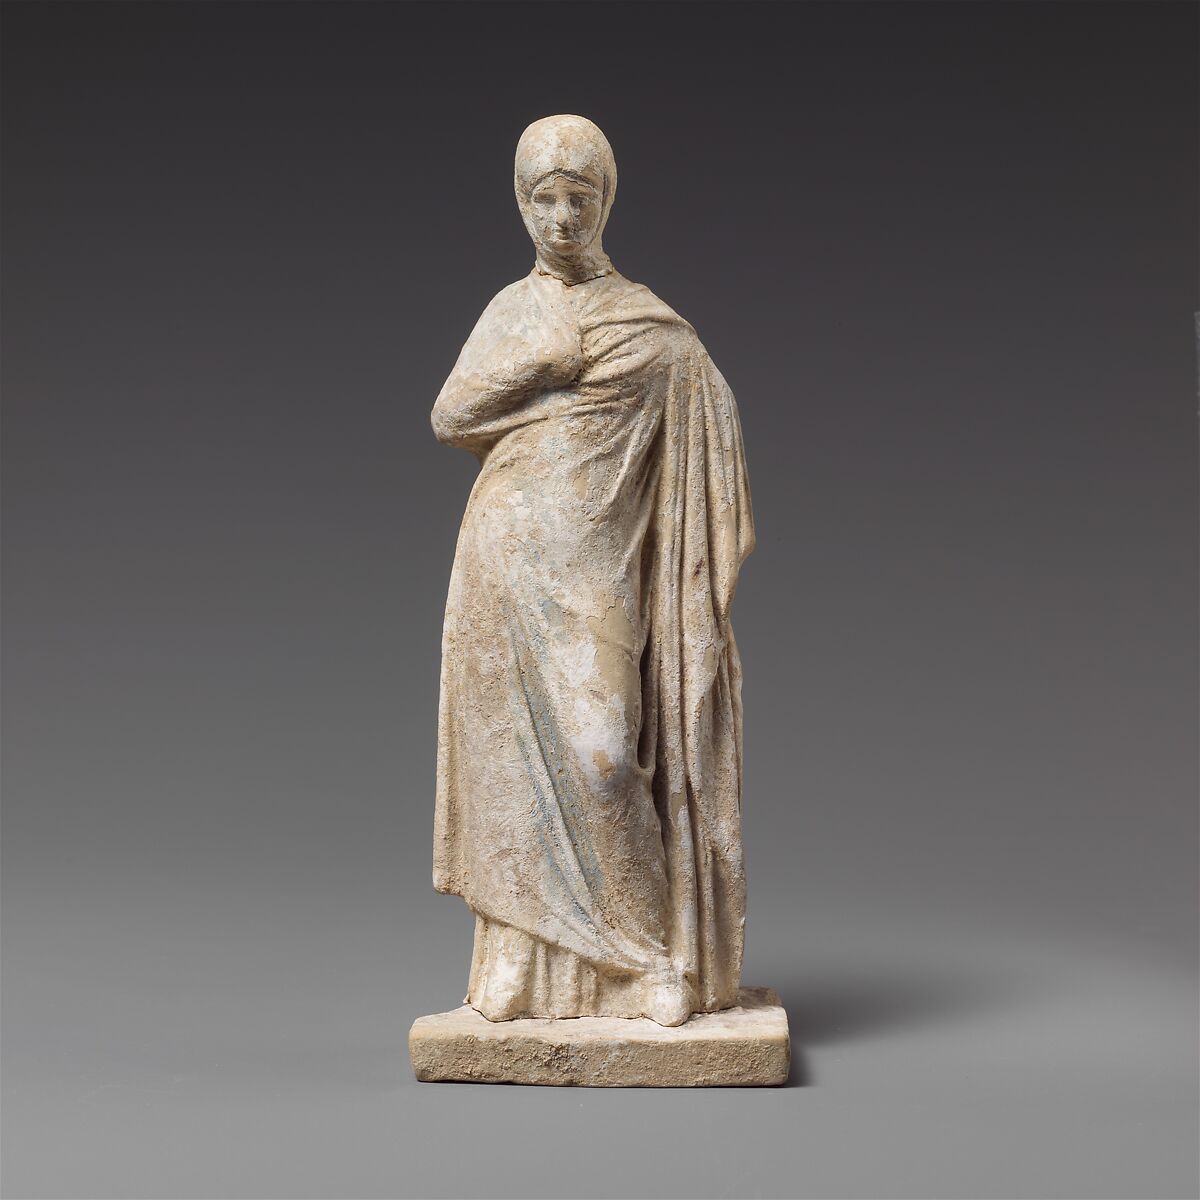 Terracotta statuette of a draped woman, Terracotta, Greek, possibly Corinthian 